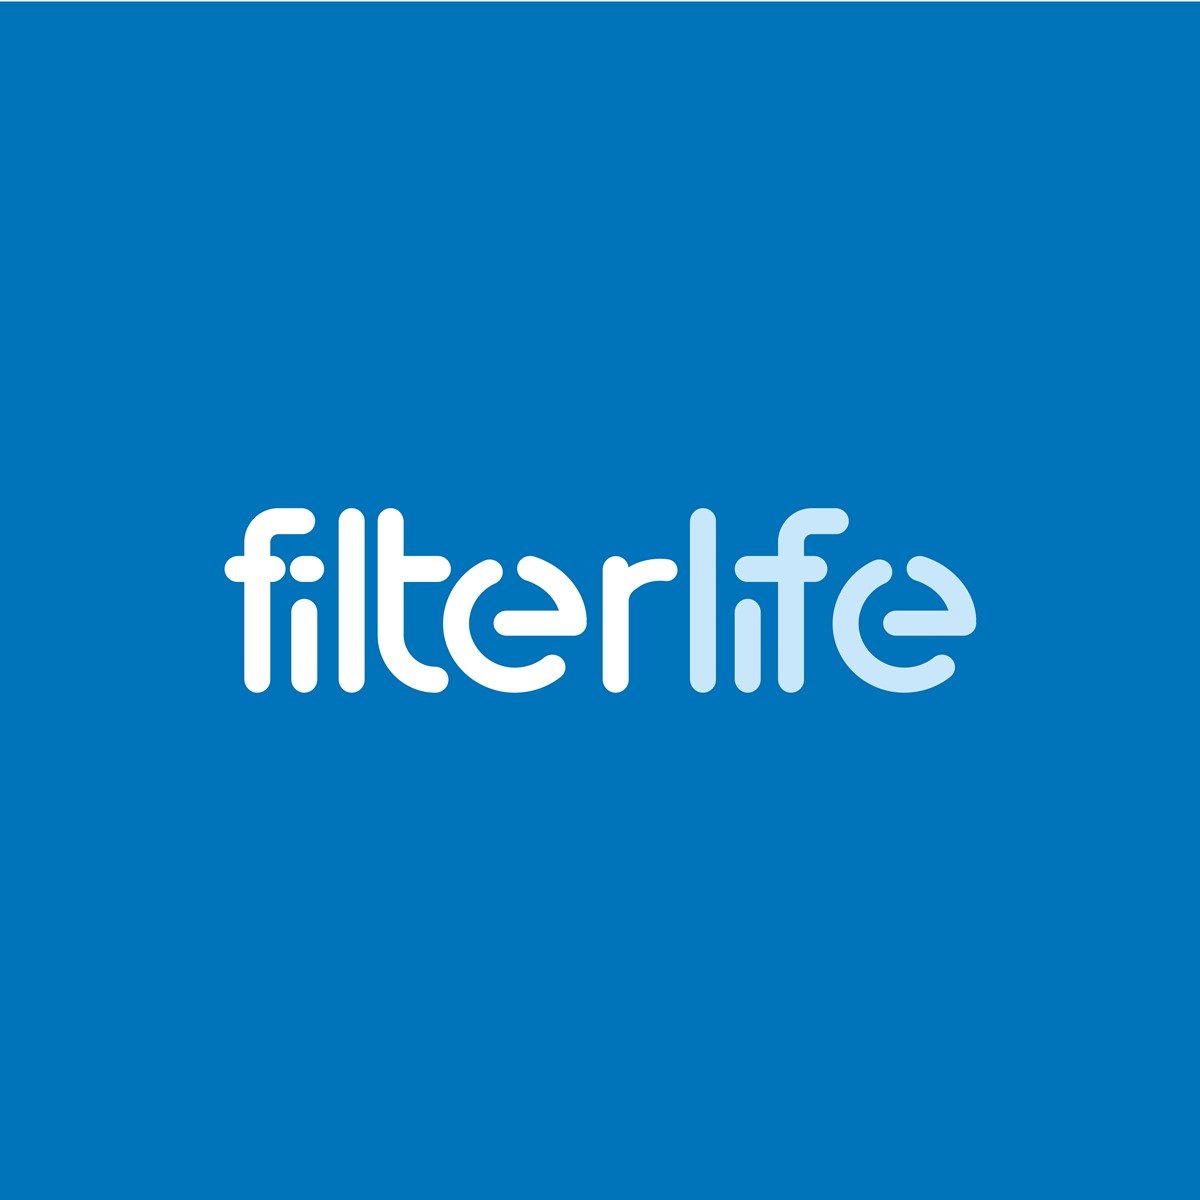 Filterlife